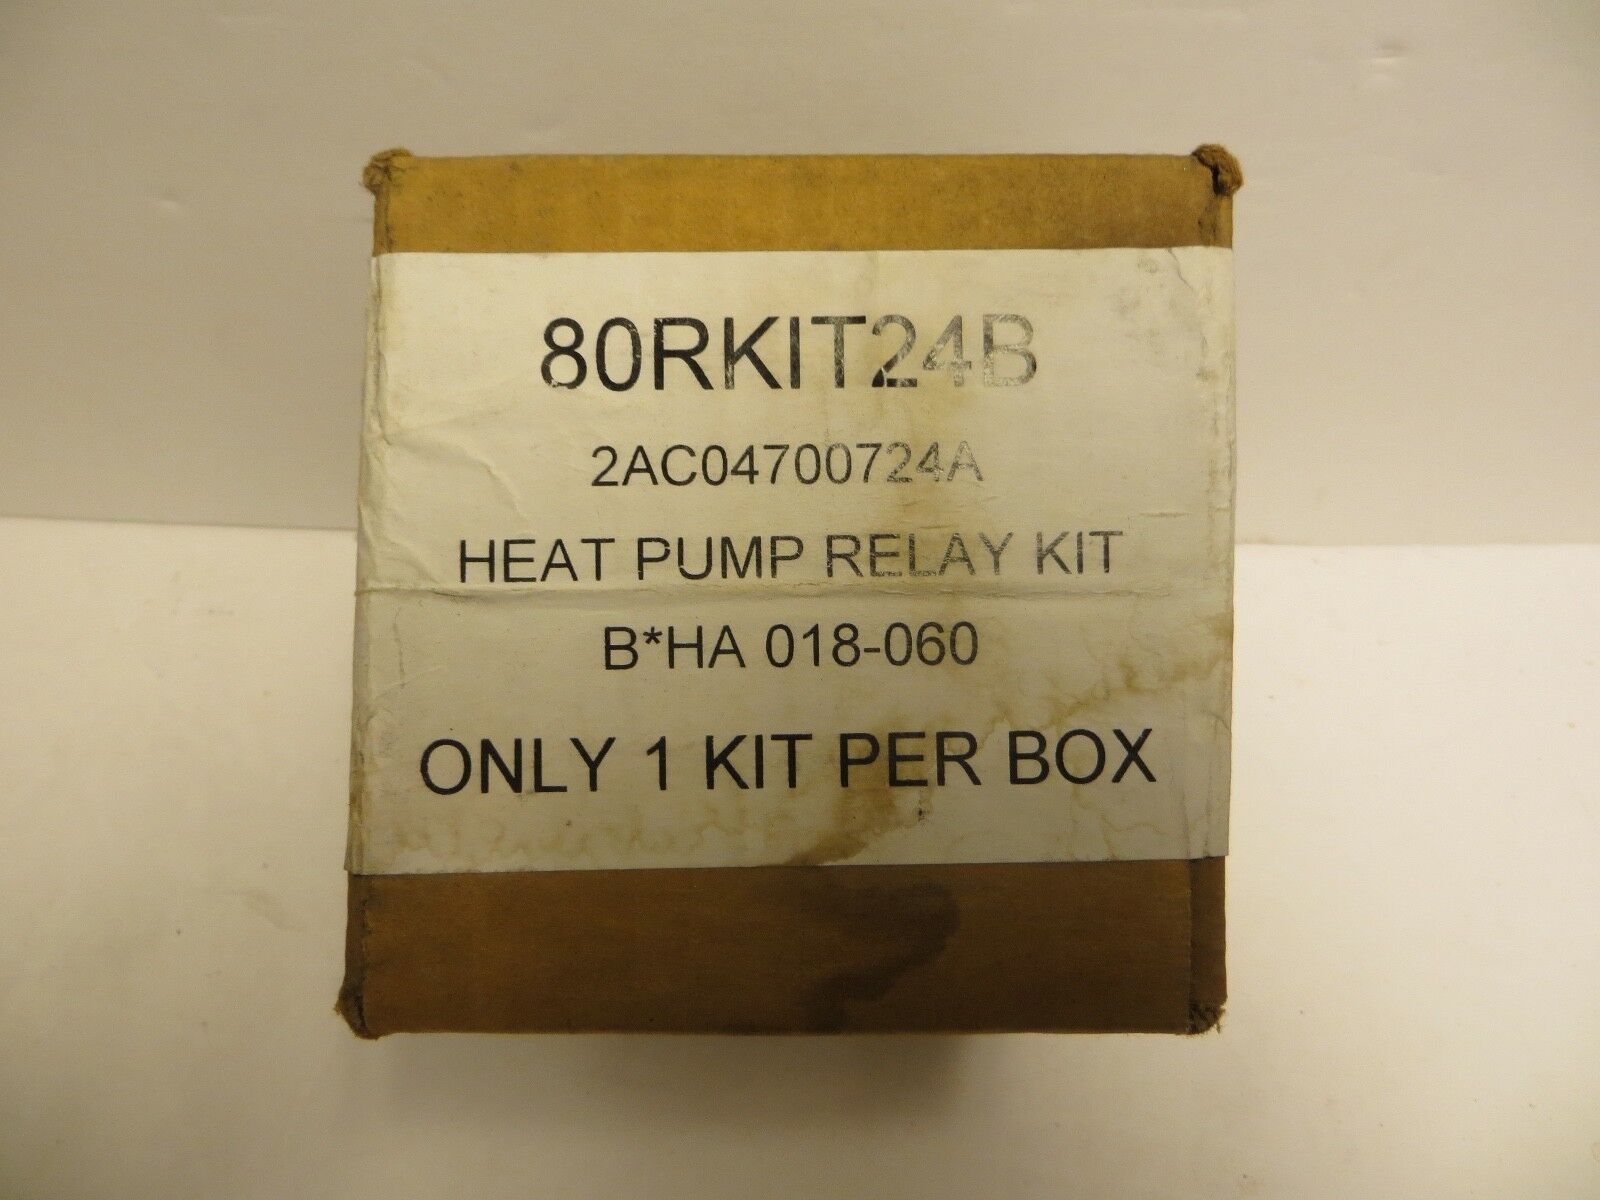 NEW in box Heat Pump Relay Kit